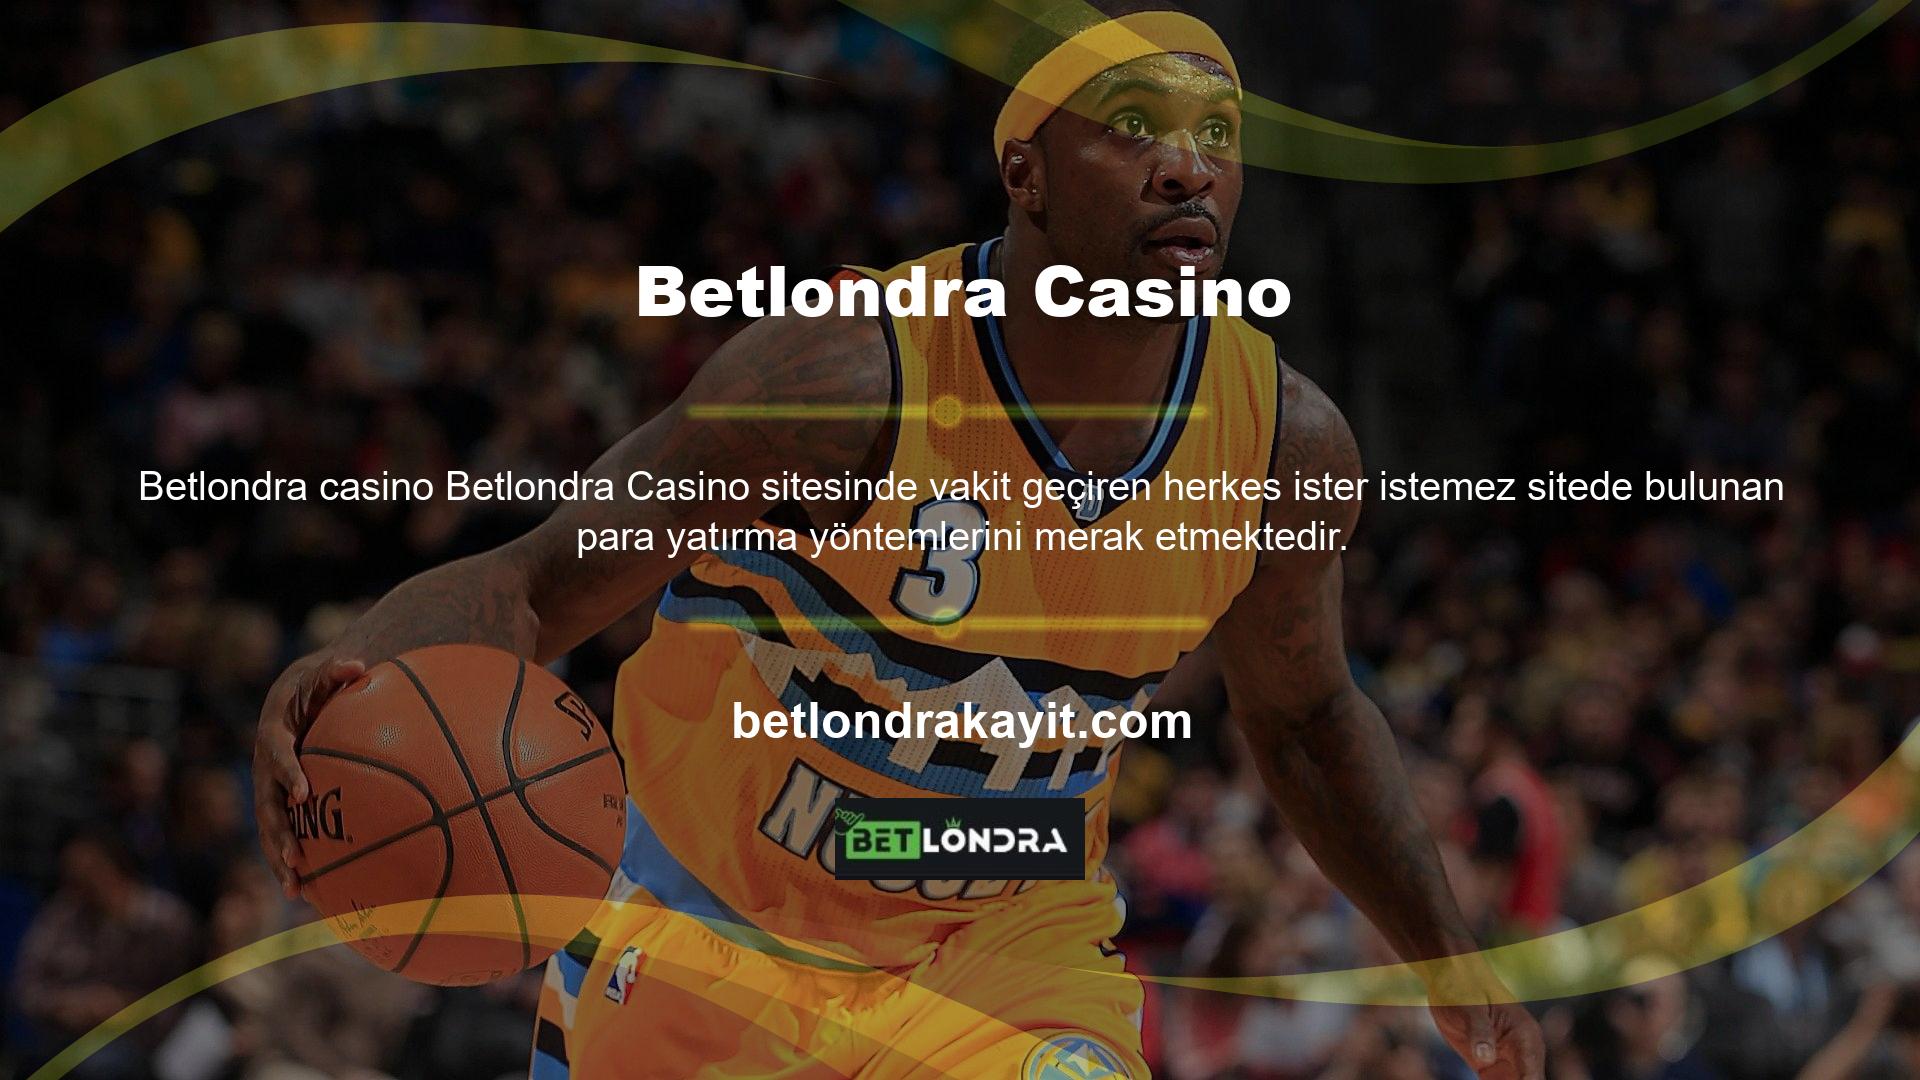 Ayrıca casino tutkunları için Betlondra bulunan para yatırma yöntemlerini ve kullanabileceğiniz ödeme yöntemlerini anlatacağız